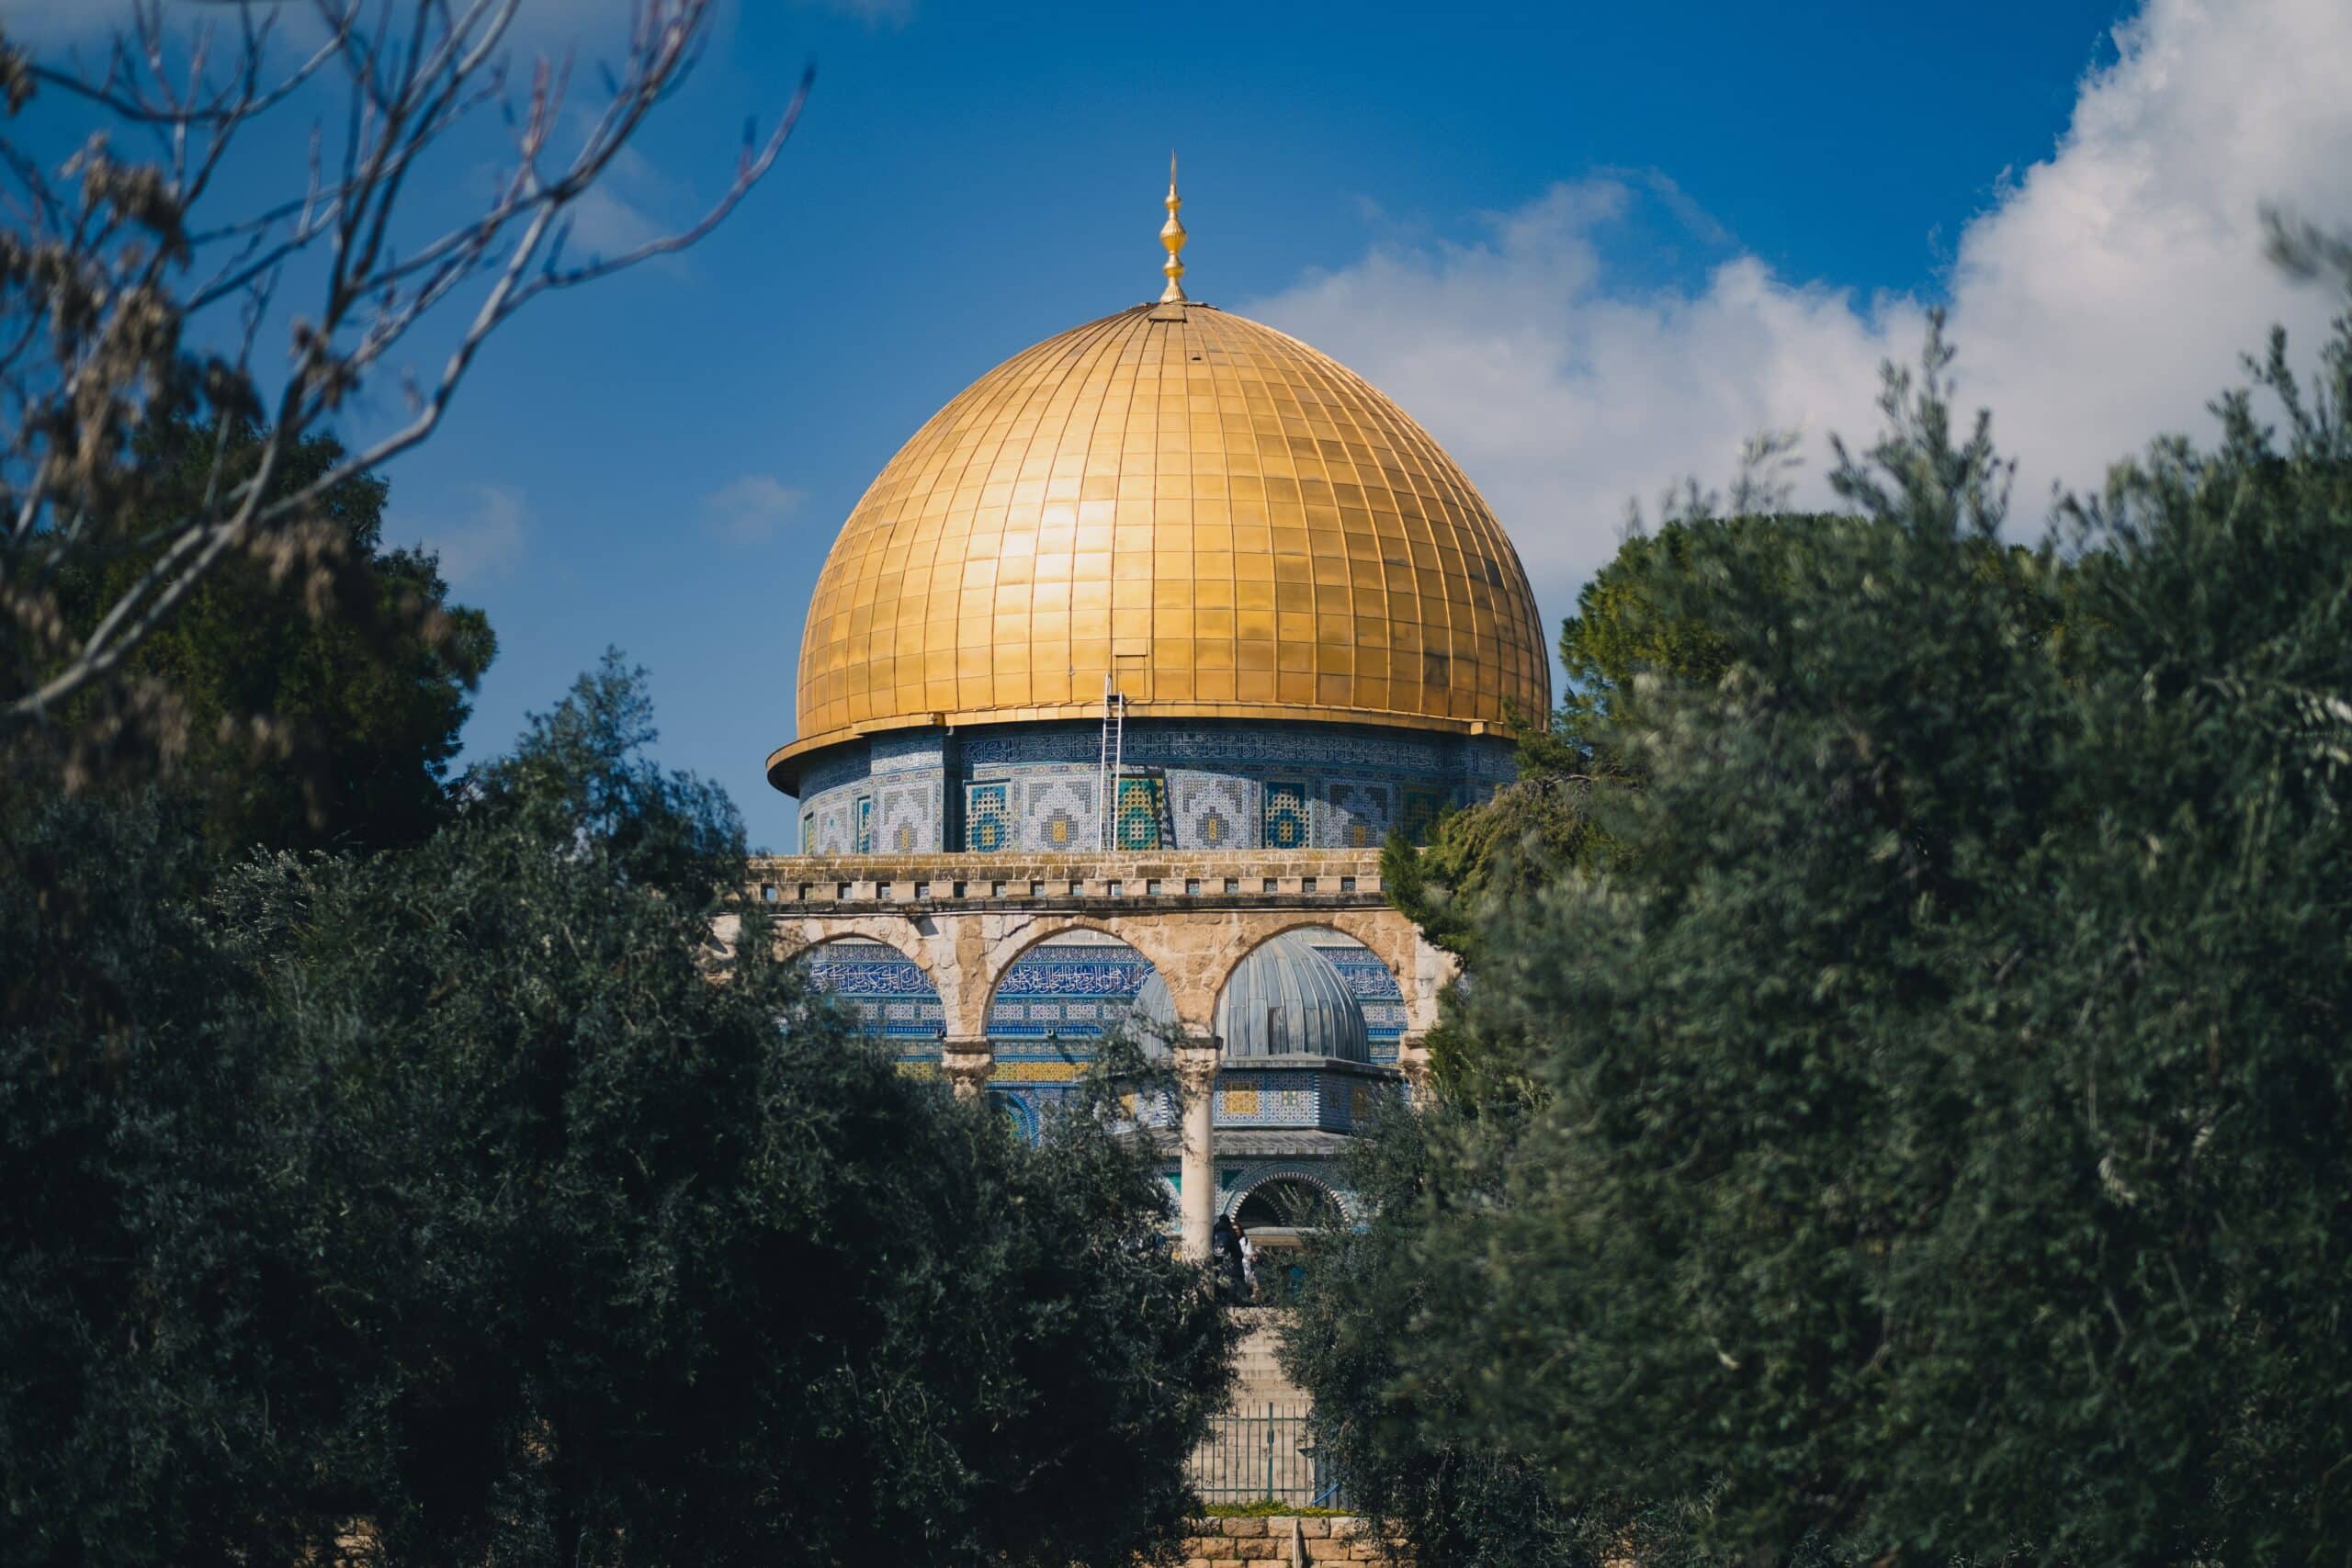 Vista da Cúpula da Rocha, Jerusalém durante o dia com cúpula dourada, paredes azuis e árvores na frente. Representa chip celular Jerusalém.